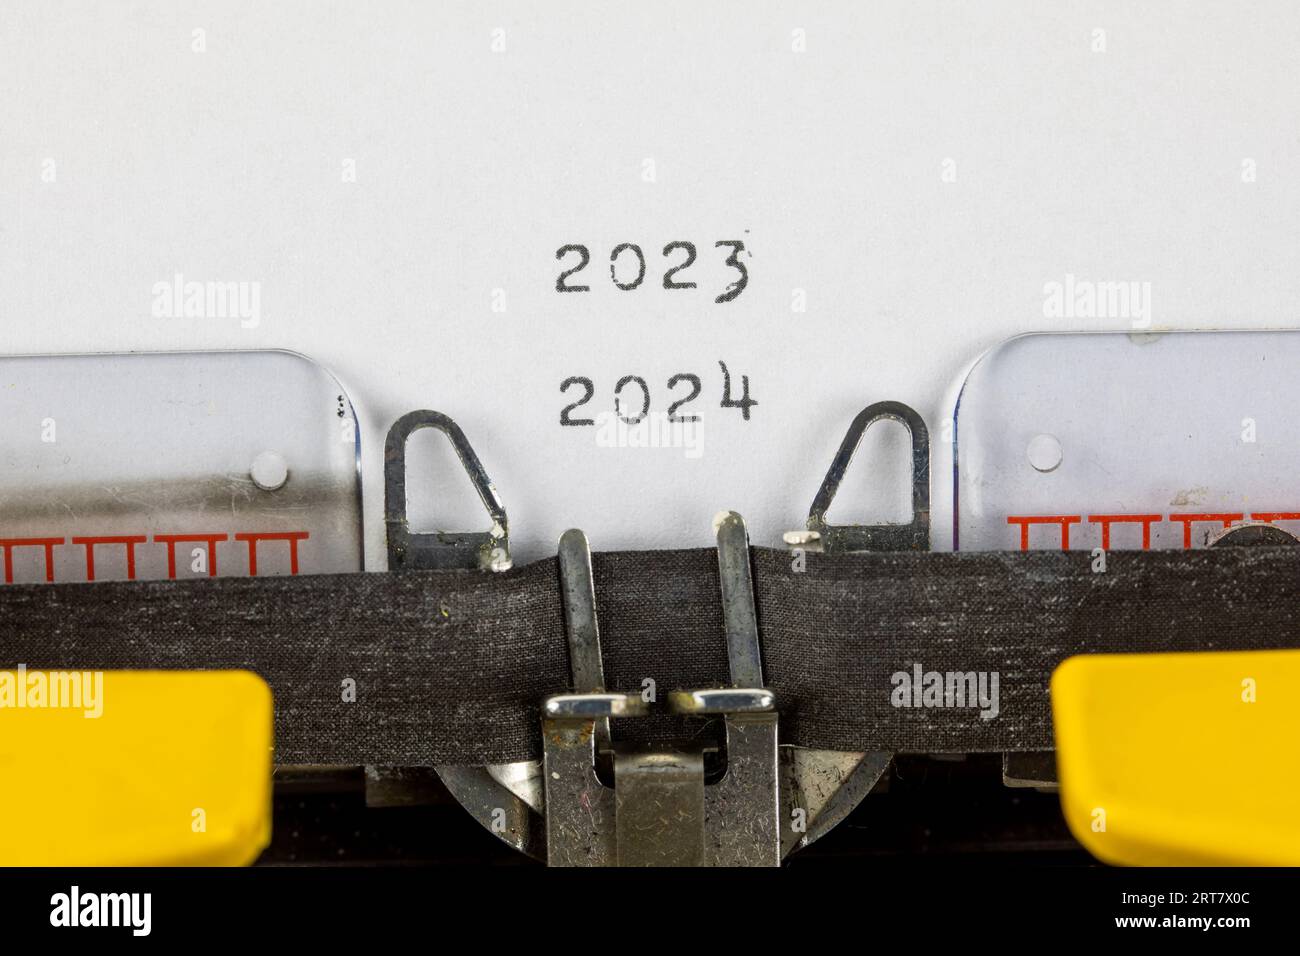 2023 - 2024 written on an old typewriter Stock Photo